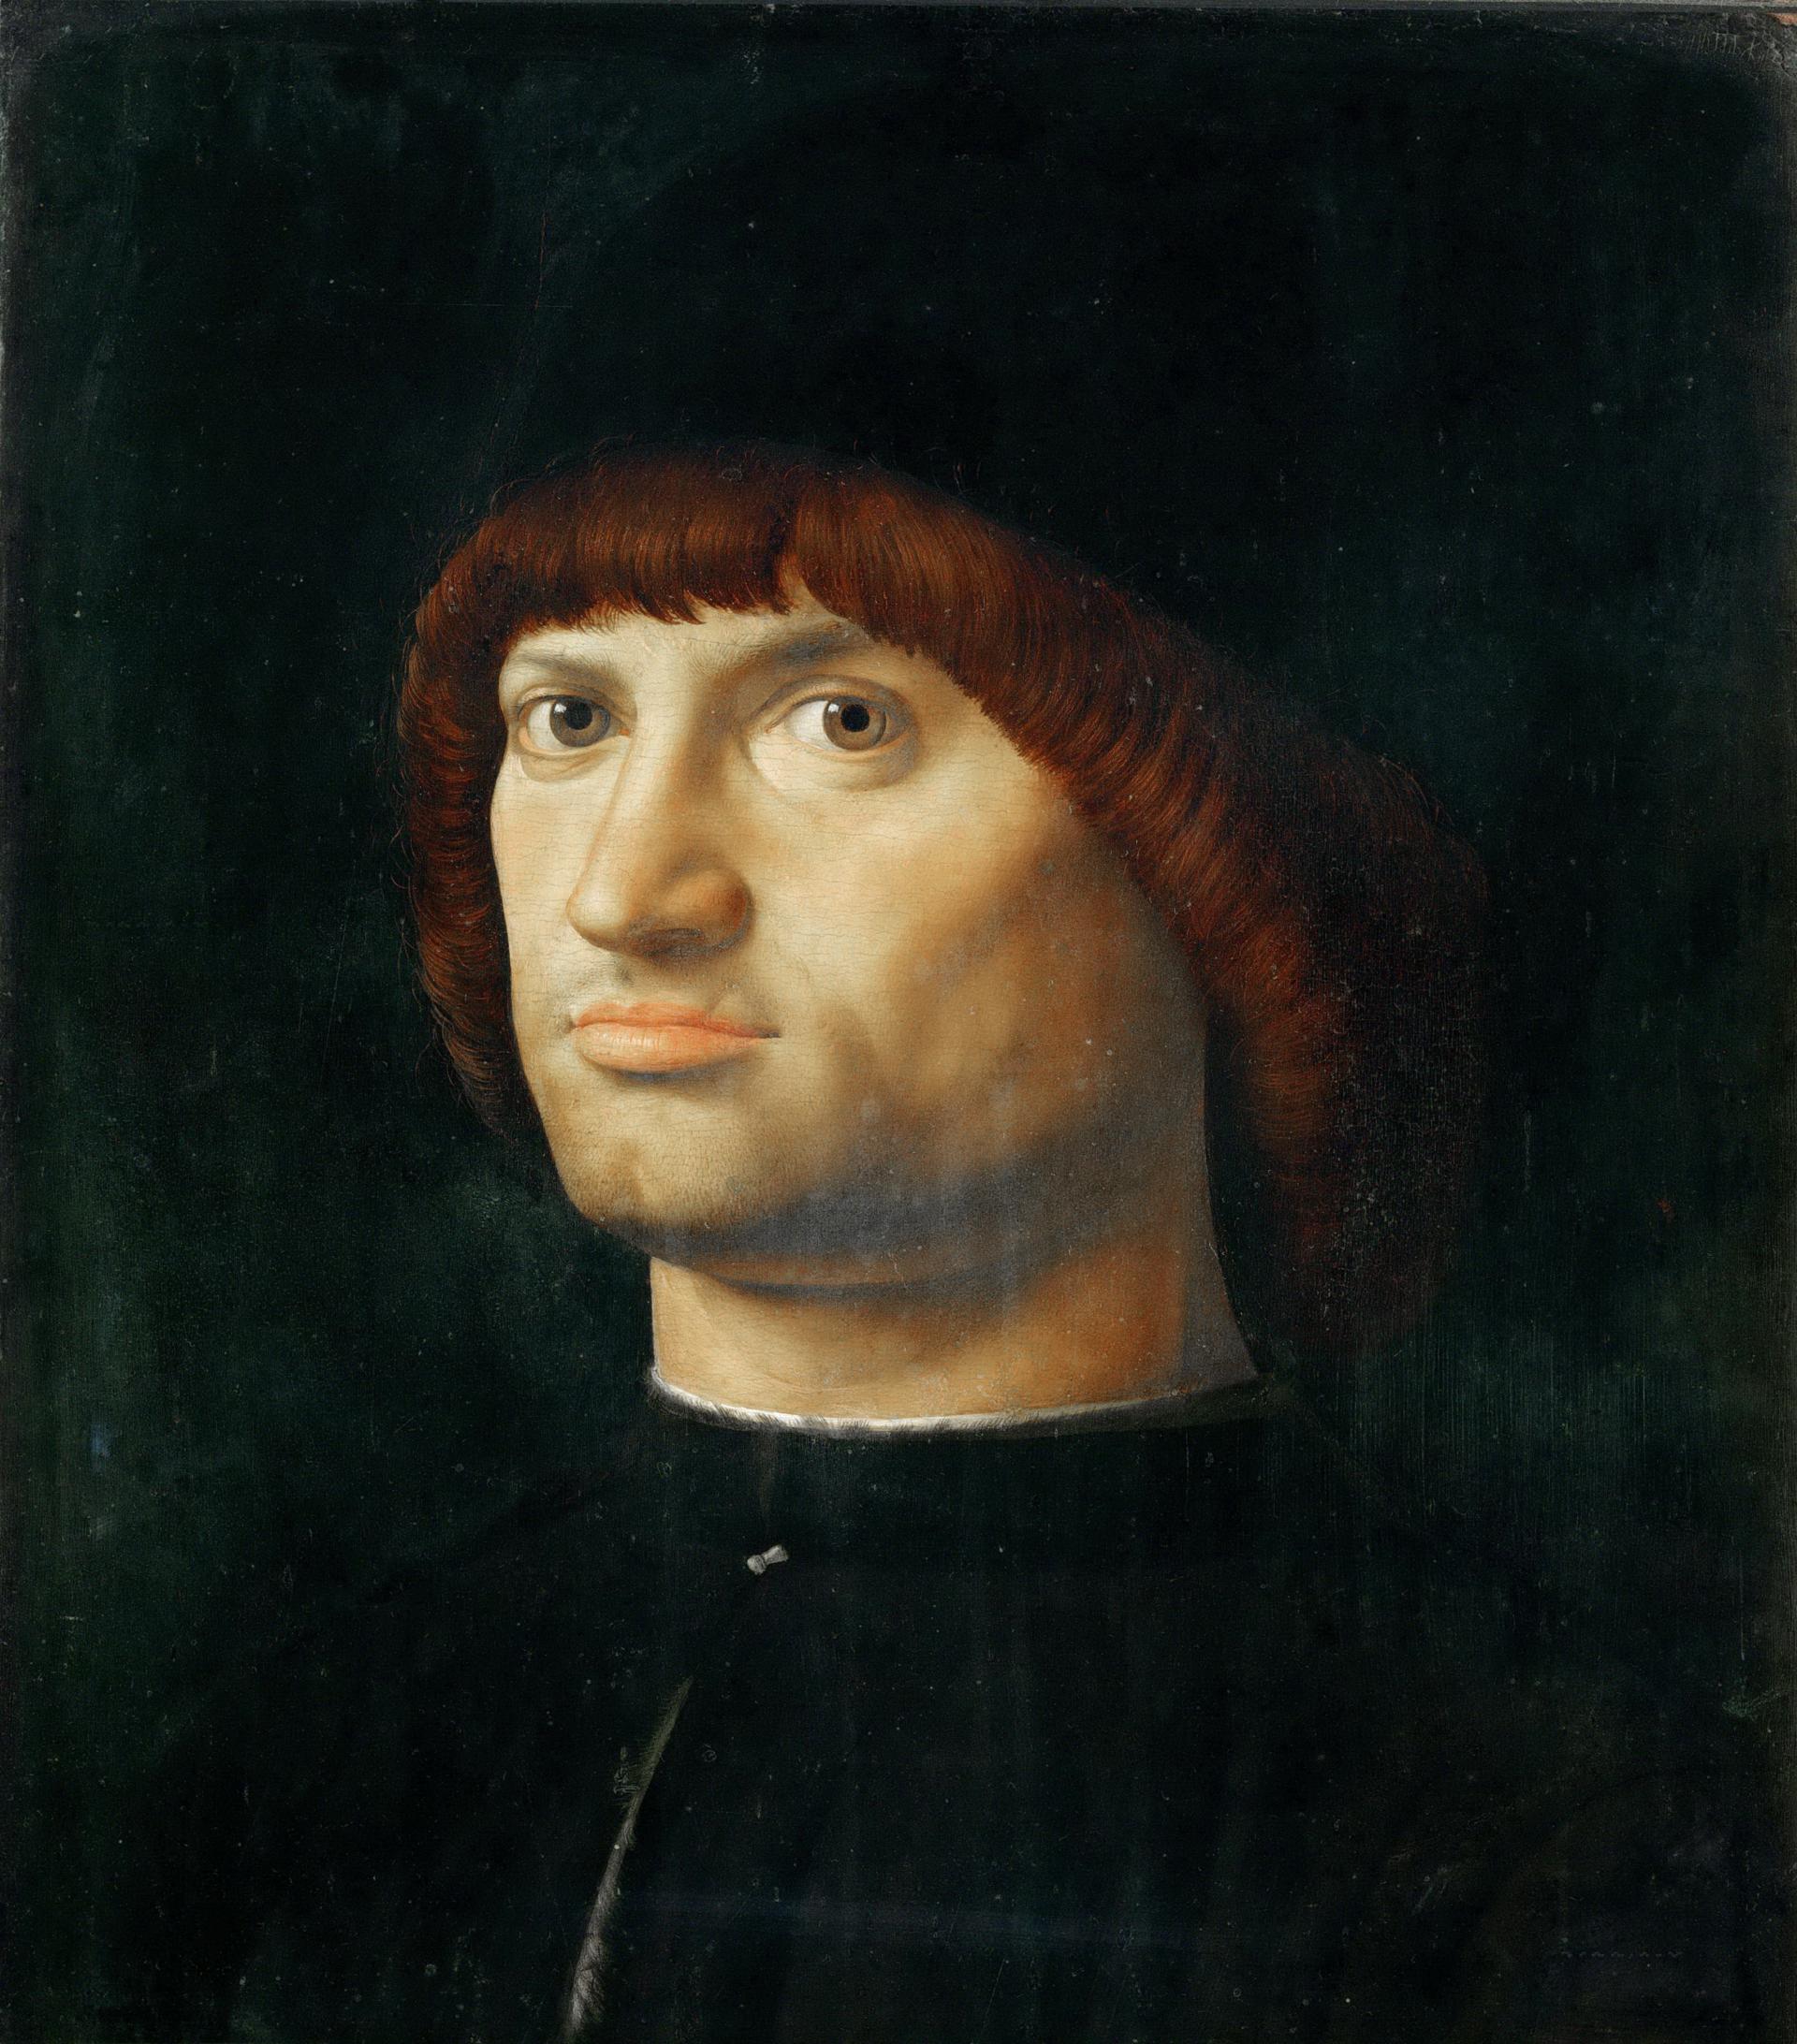 0019_安托内洛_Antonello da Messina c 1430-1479 —— Portrait of a Man Il Condottiere_3203x3643PX_TIF_72DPI_34_0